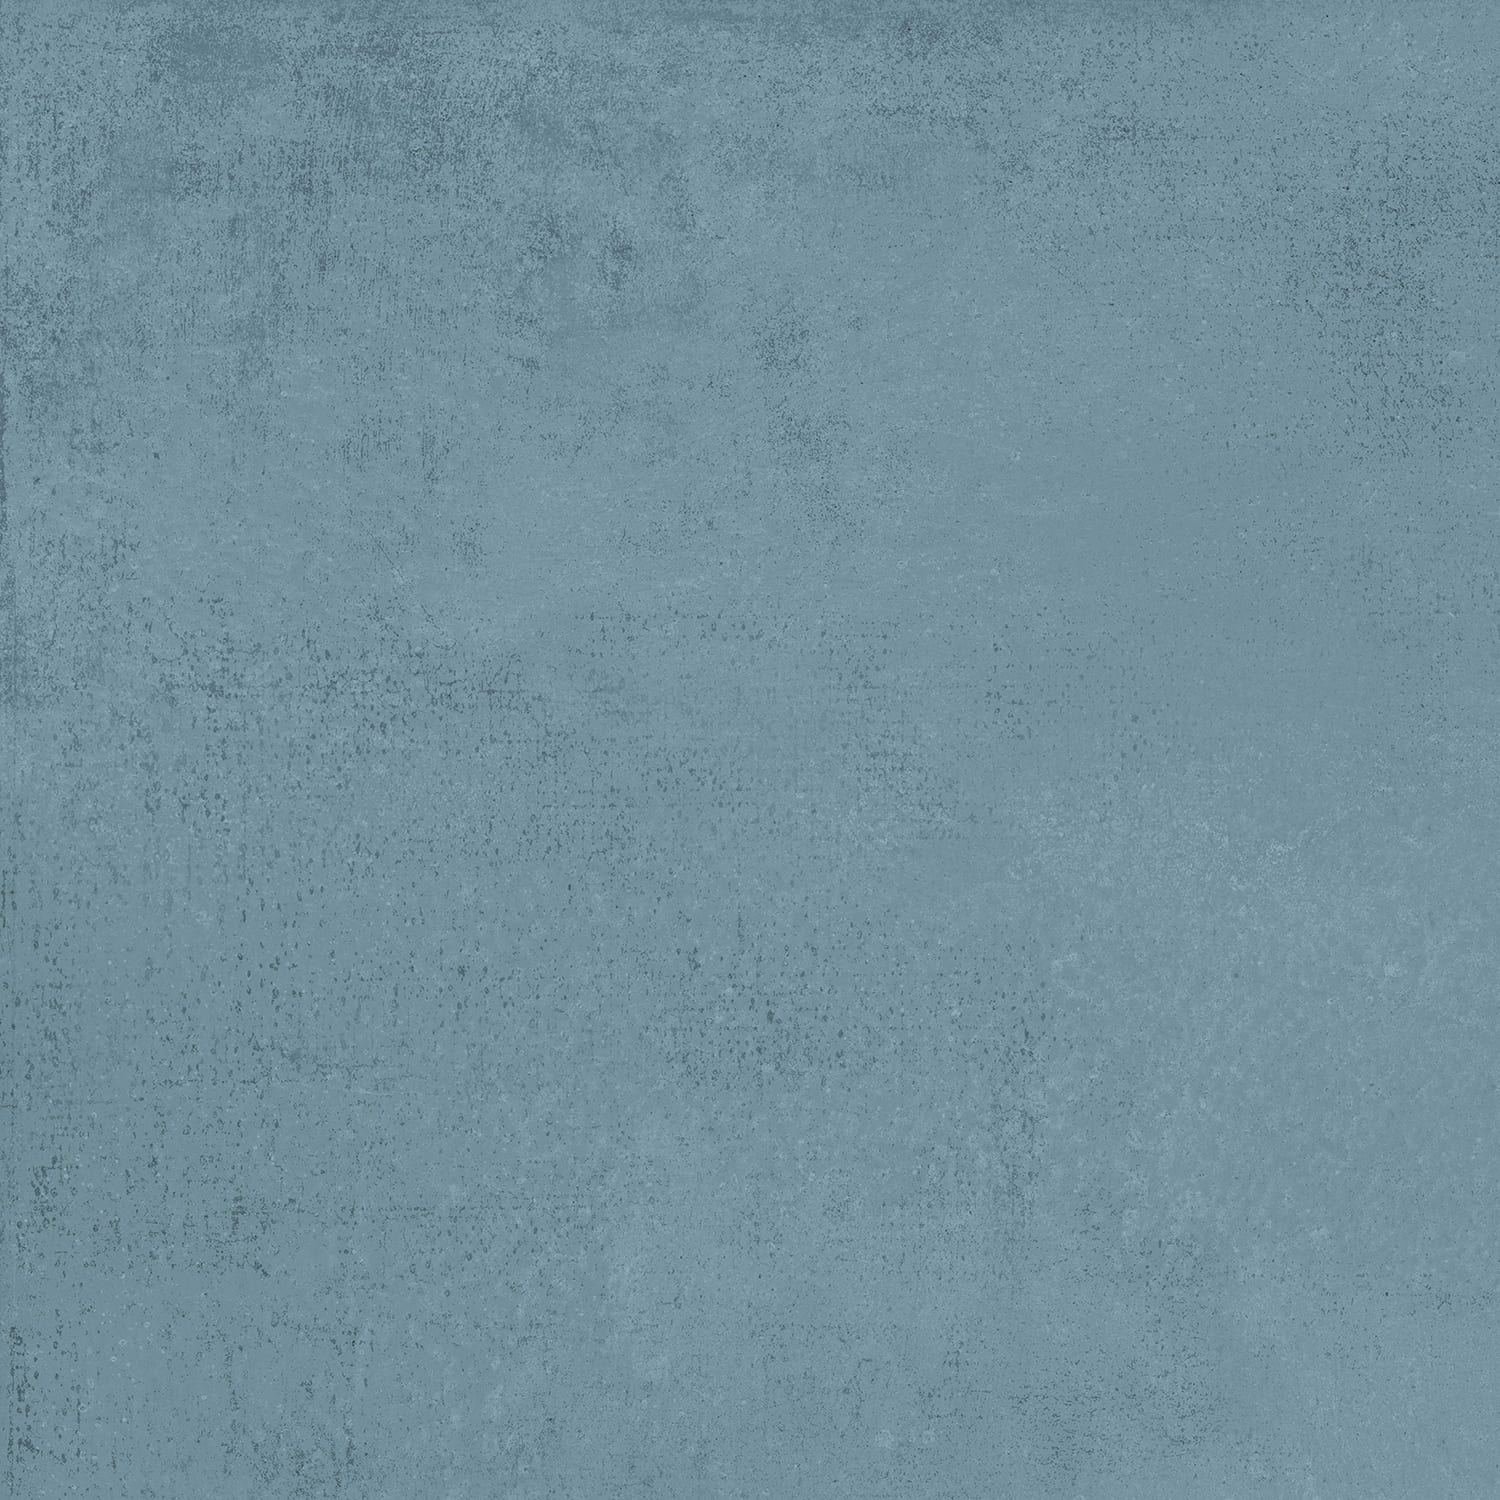 G012 ArtBeton (АртБетон) Blue 600x600 рельеф синий